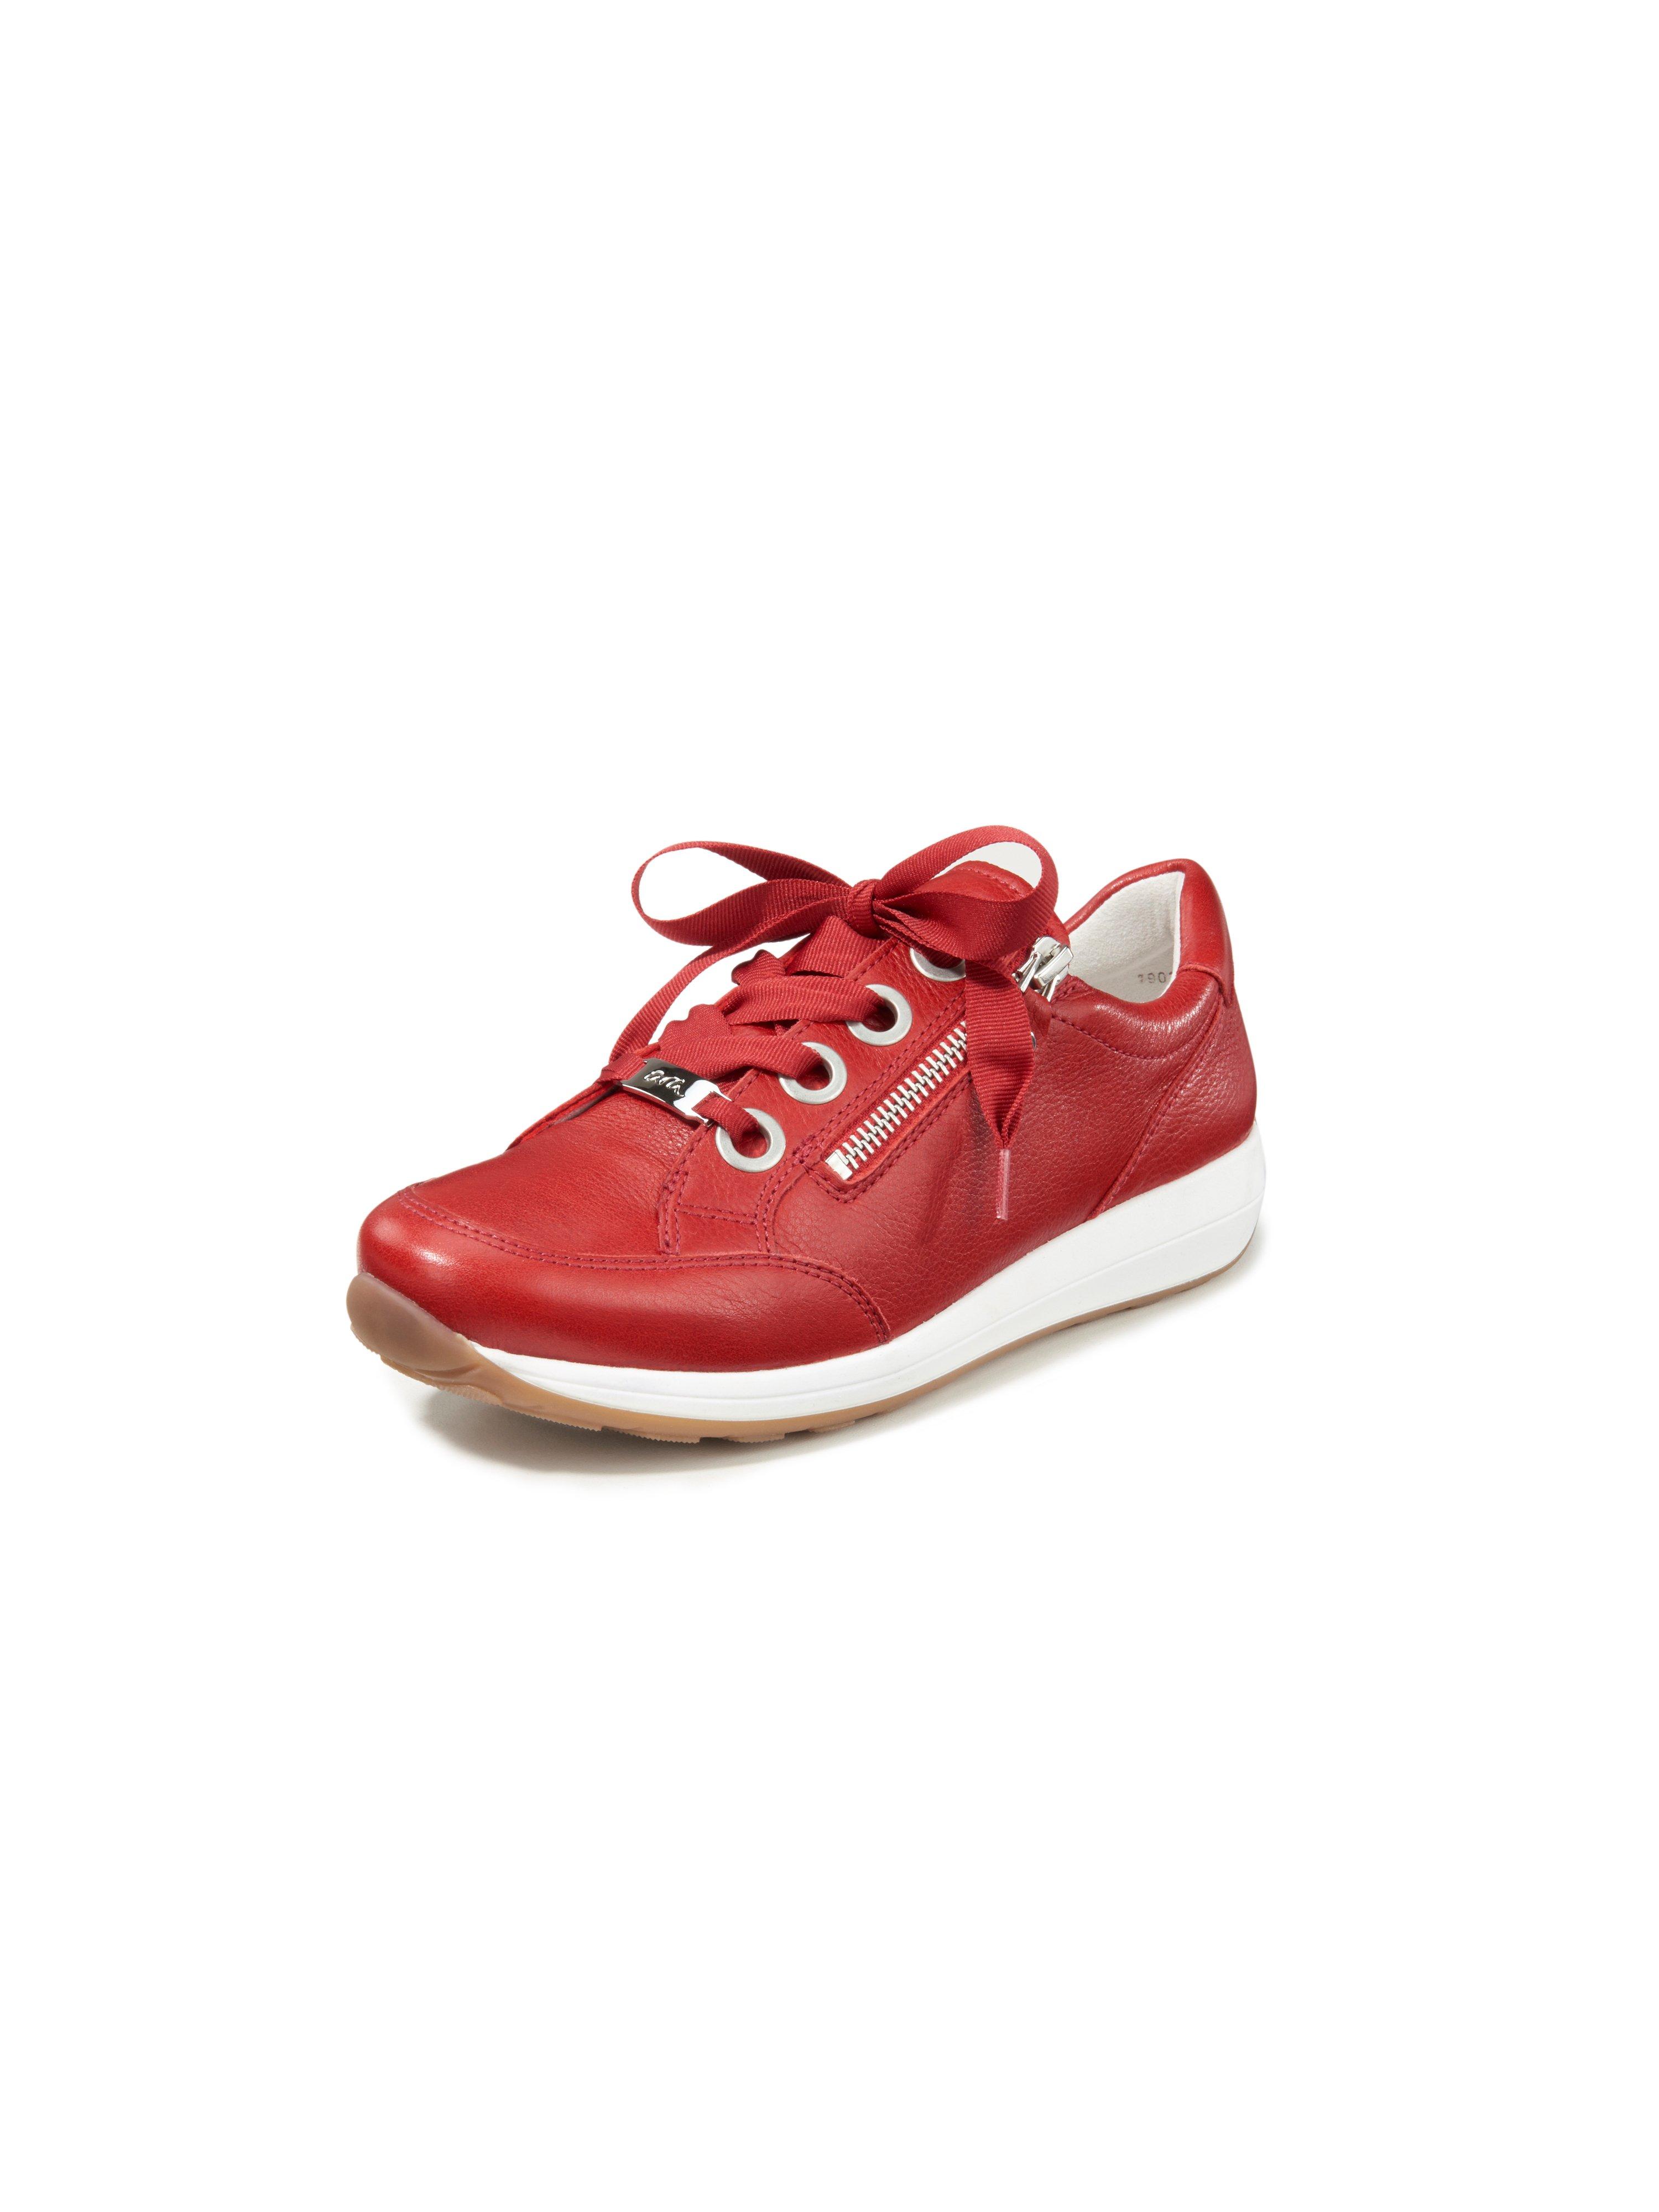 ARA - Sneakers Osaka HighSoft - red